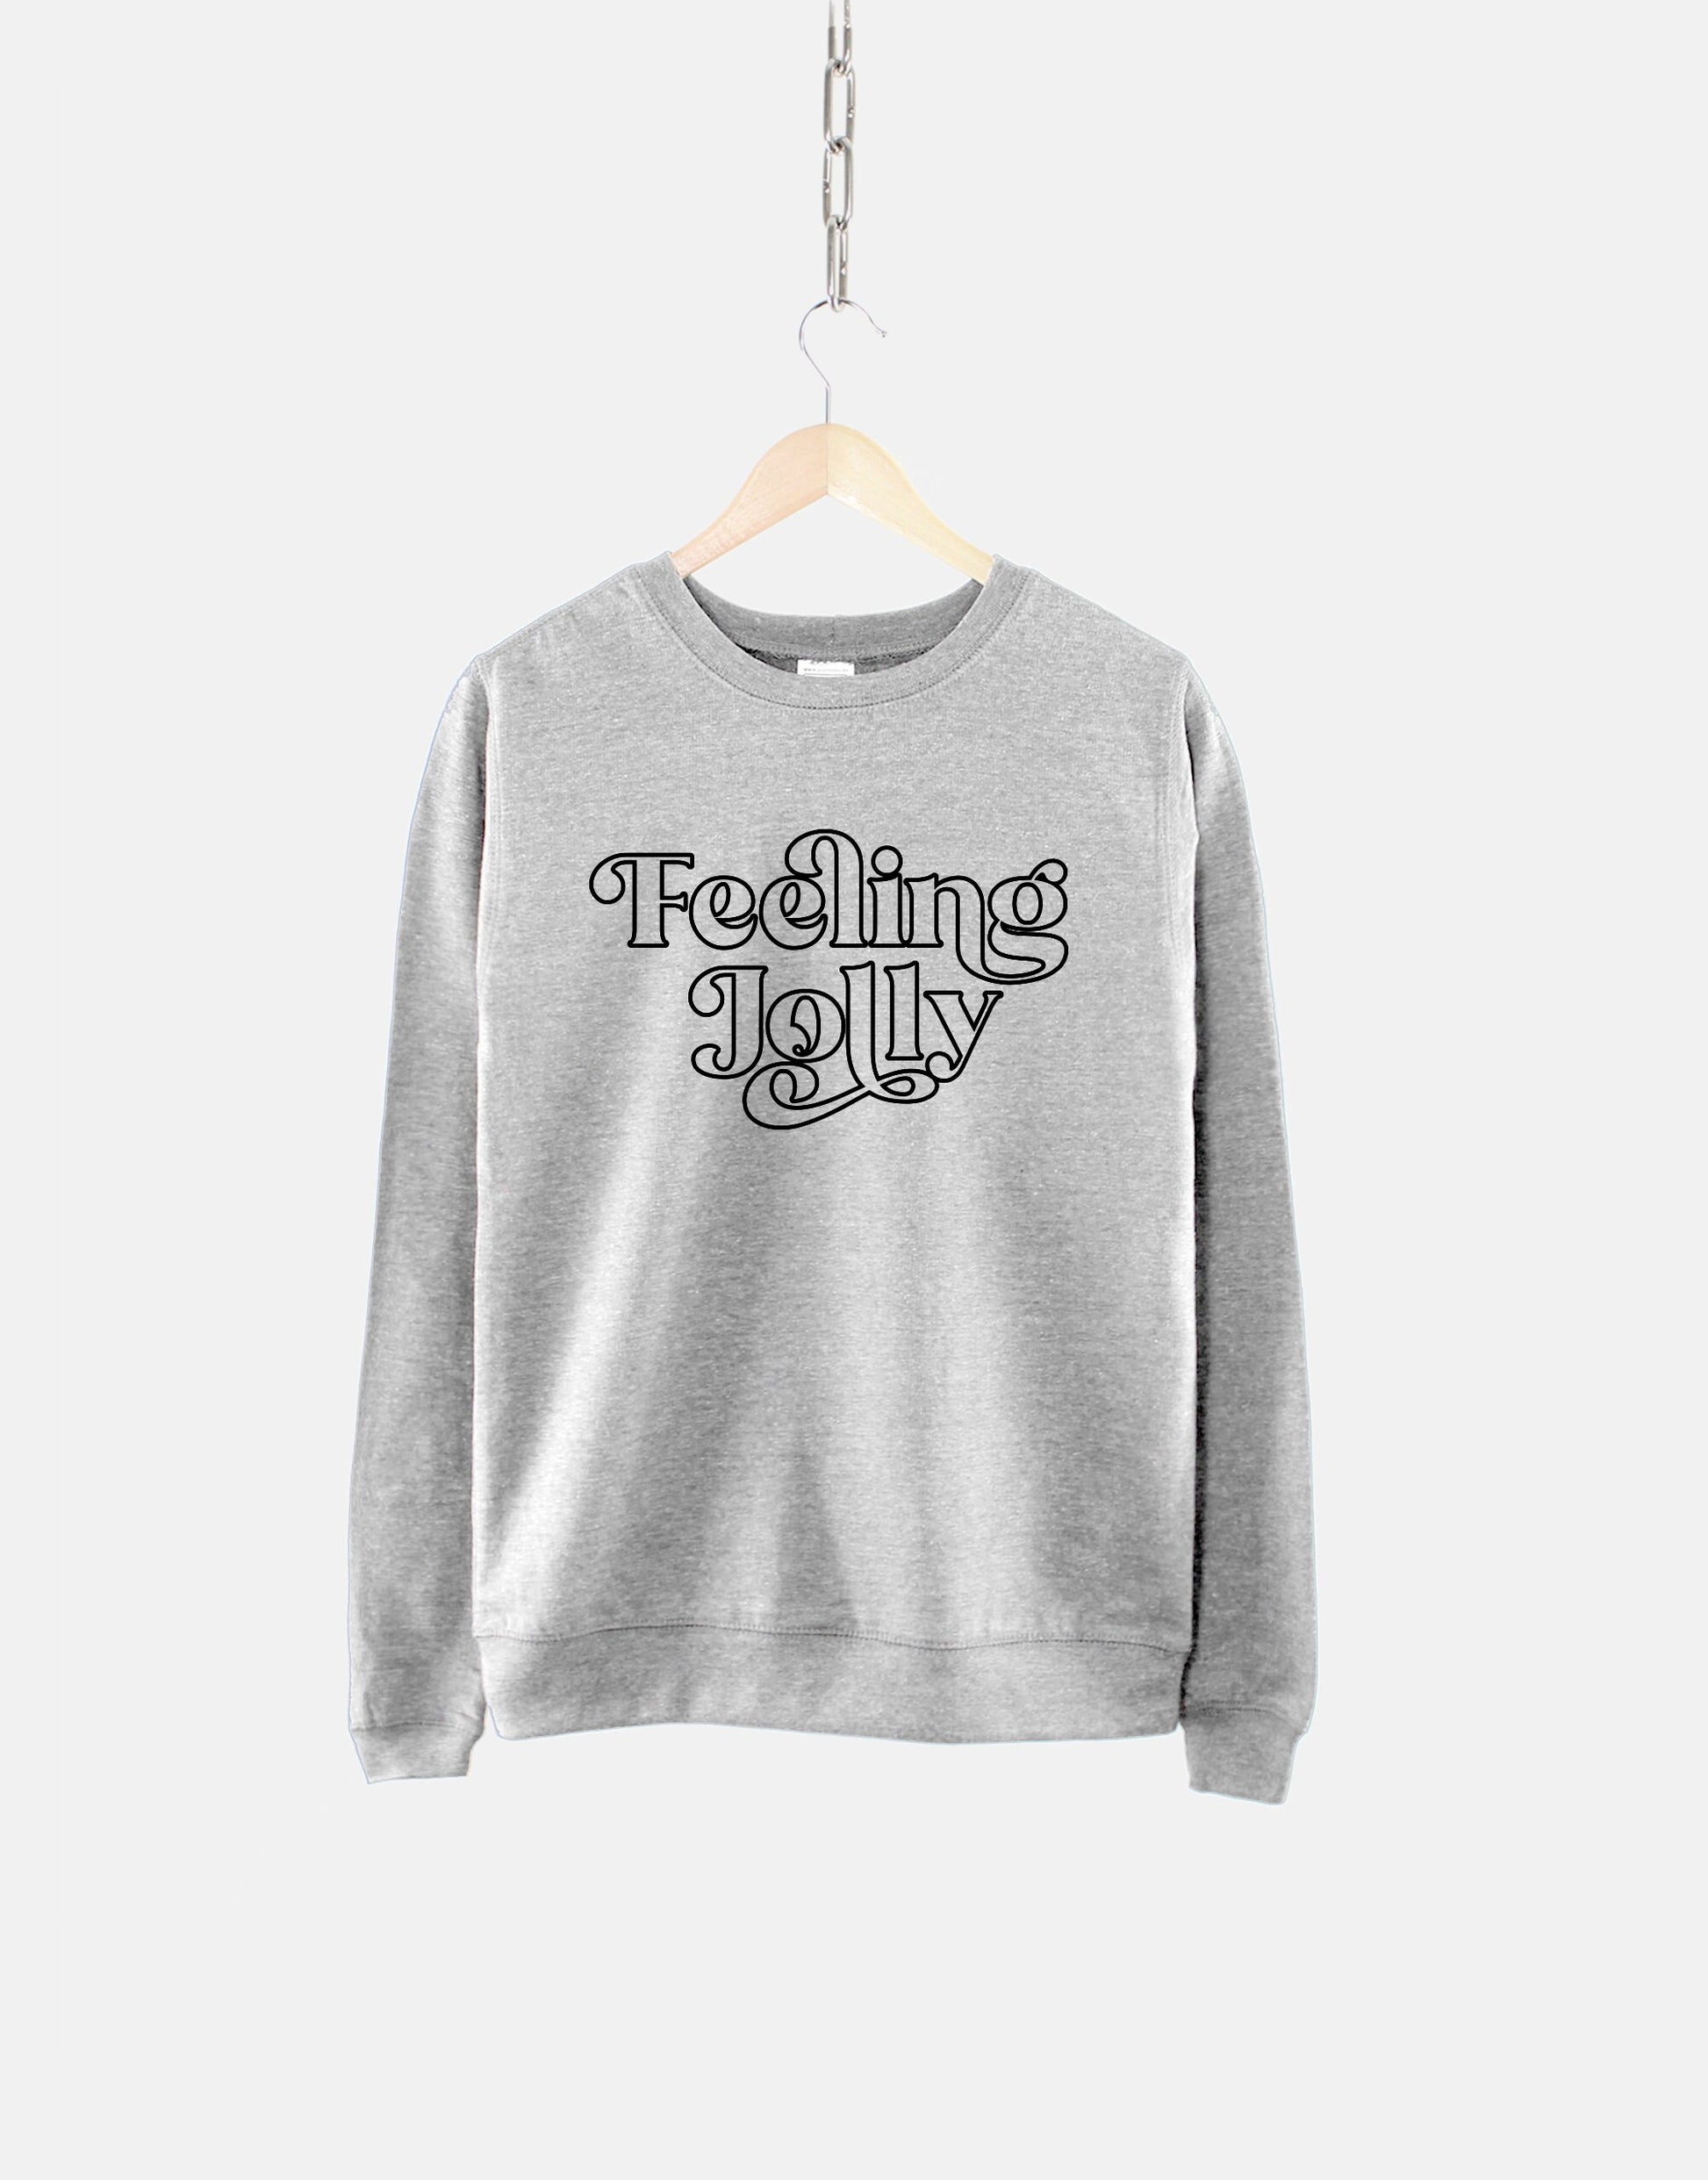 Feeling Jolly Christmas Sweatshirt - Retro Christmas Sweatshirt - Chri –  Qurious Shop | Hoodies